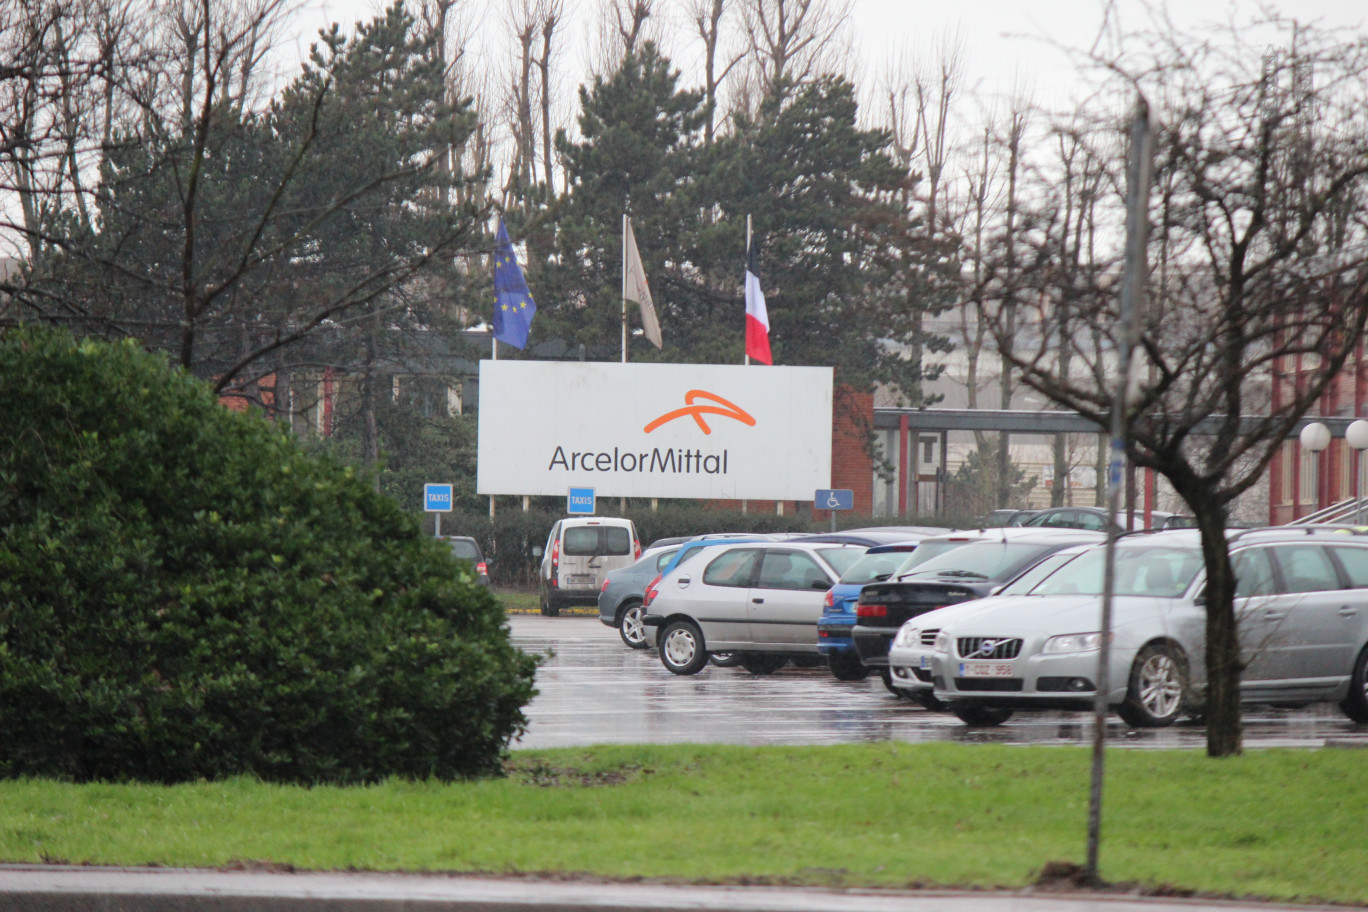 « Arcelor-Mittal, premier employeur de la Cote d’Opale avec 3 400 salariés directs ».